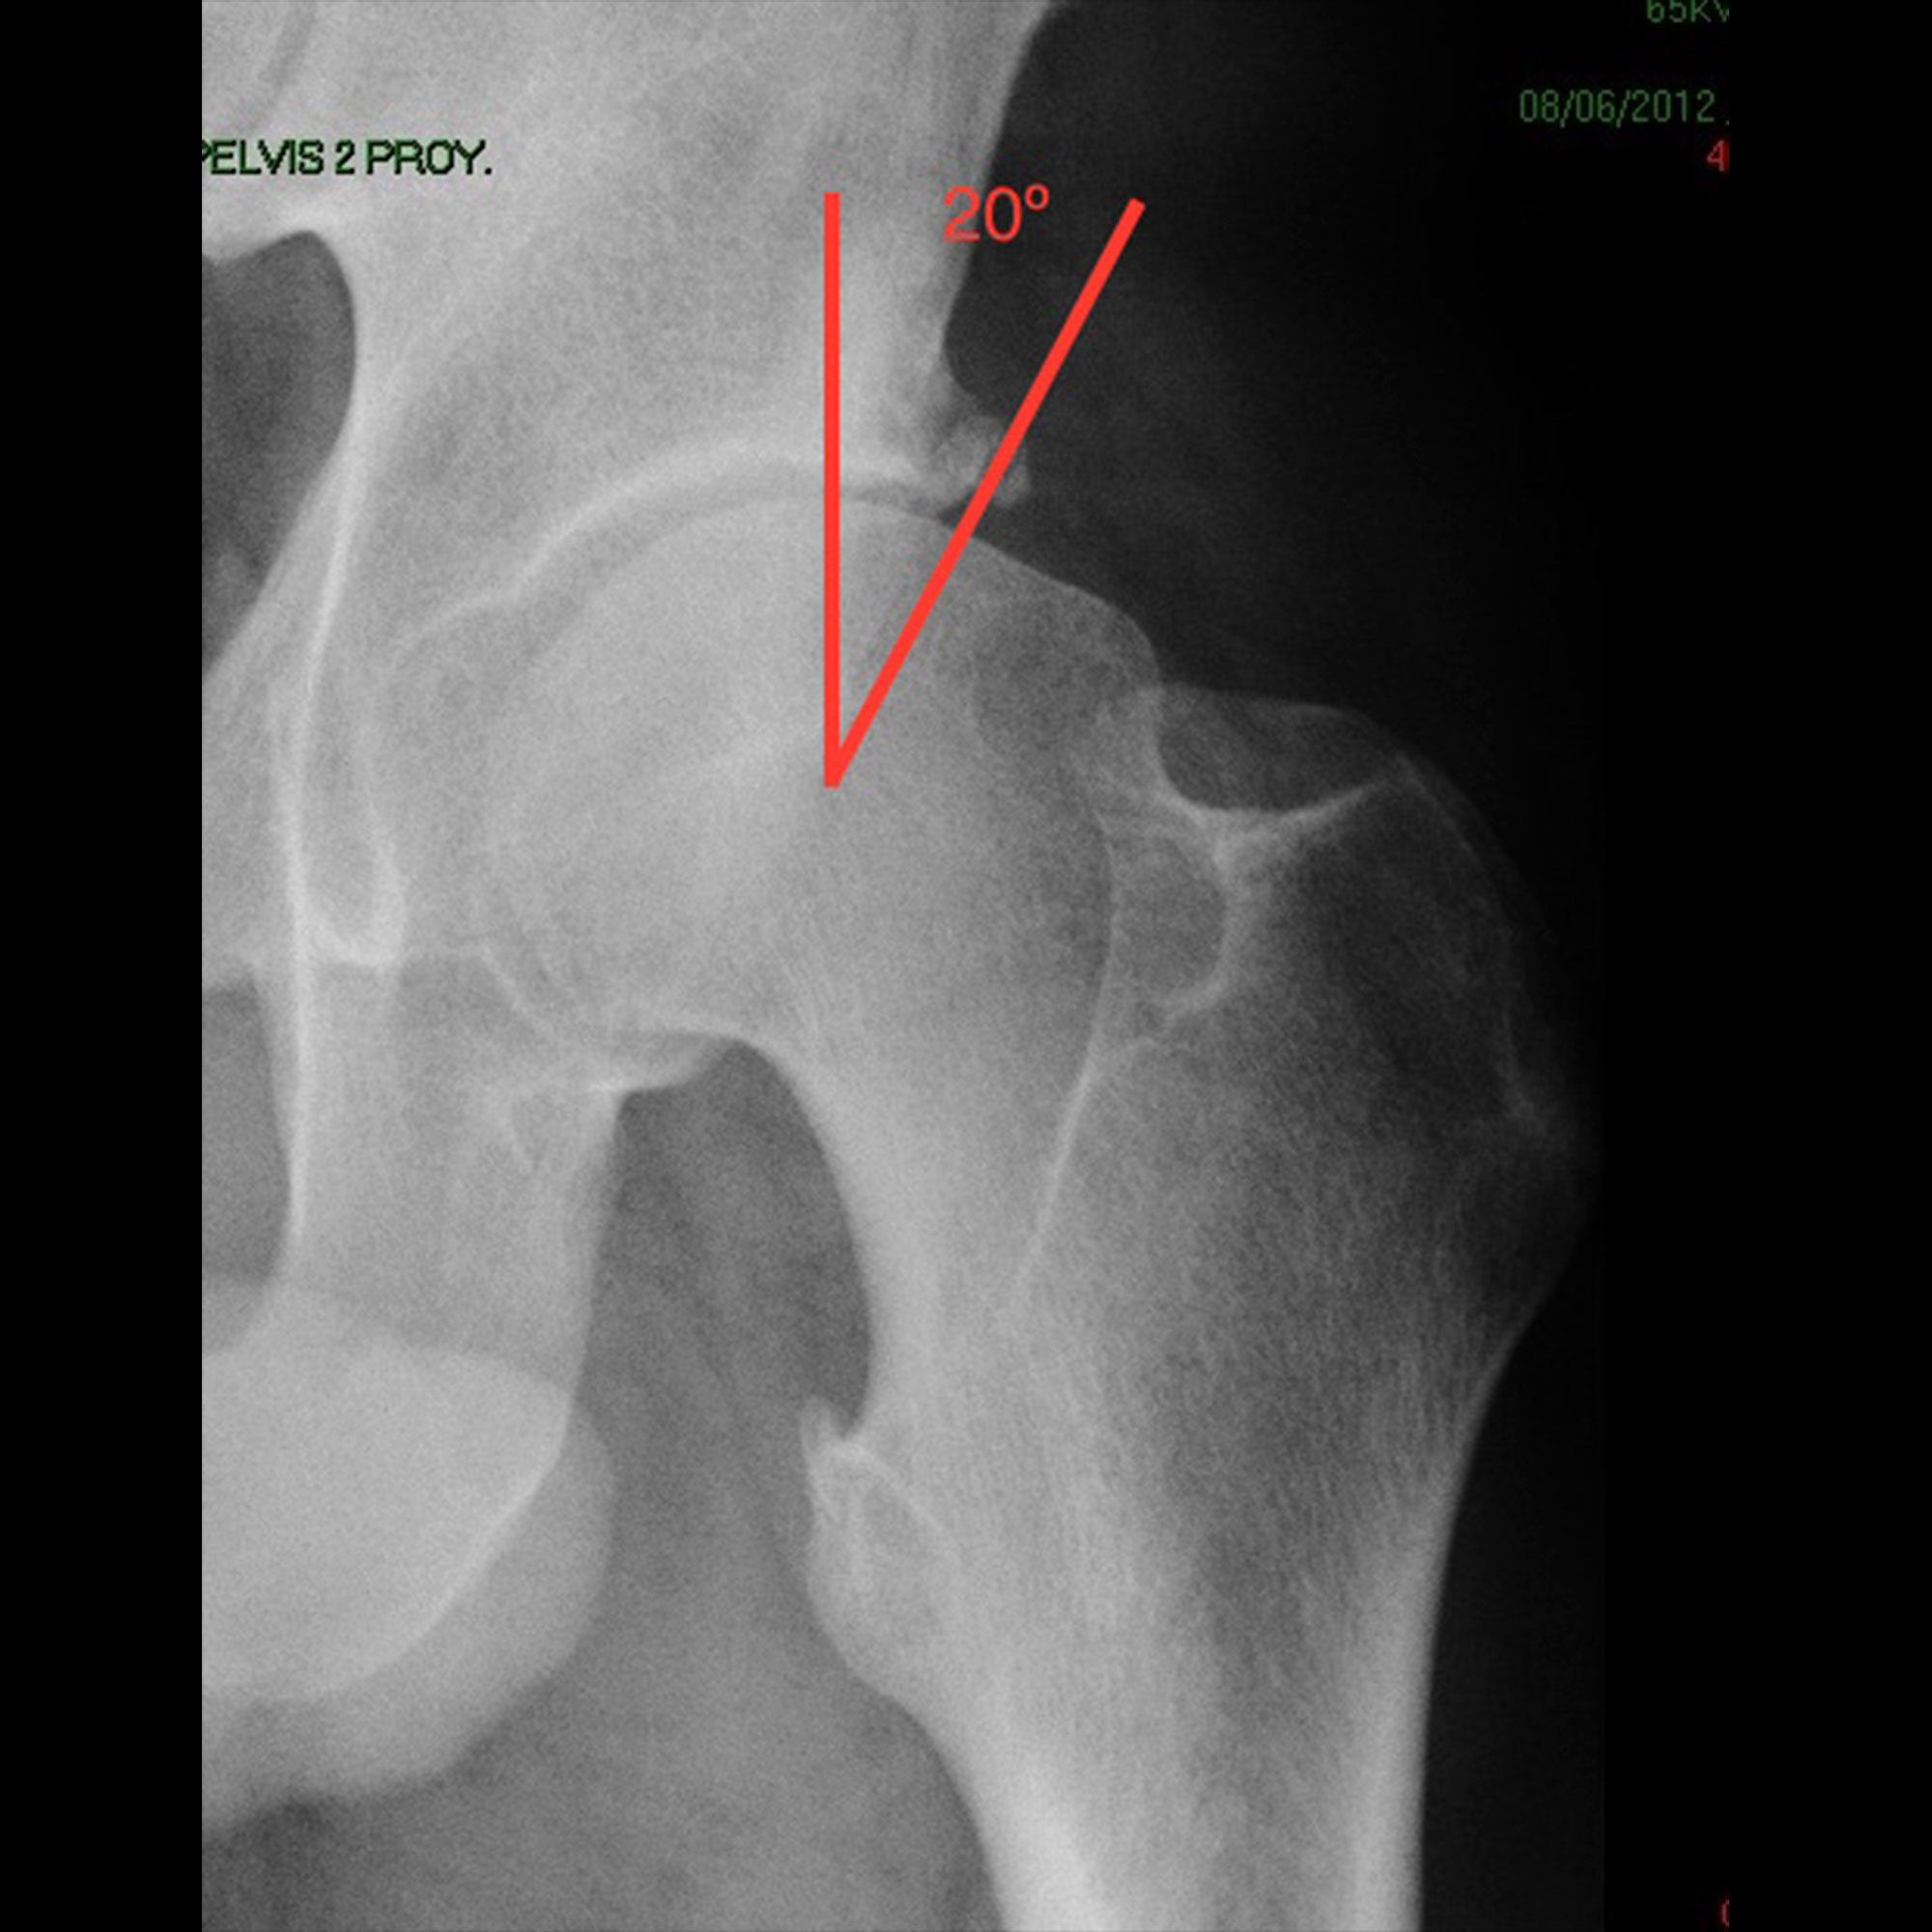 Radiografía con imagen de displasia de cadera por falta de cobertura acetabular